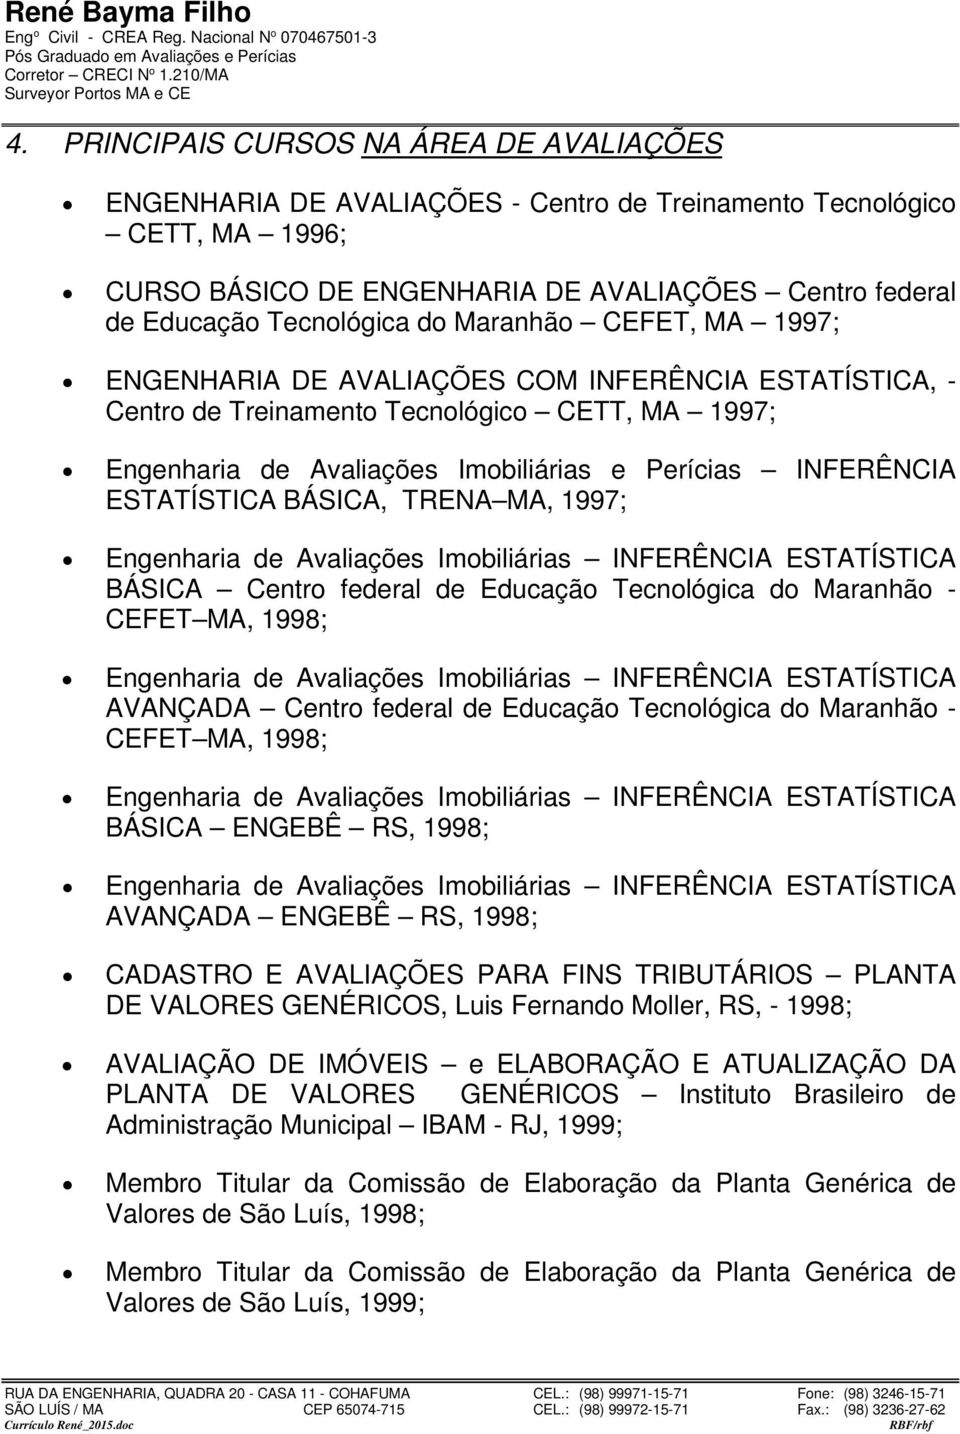 ESTATÍSTICA BÁSICA, TRENA MA, 1997; BÁSICA Centro federal de Educação Tecnológica do Maranhão - CEFET MA, 1998; AVANÇADA Centro federal de Educação Tecnológica do Maranhão - CEFET MA, 1998; BÁSICA